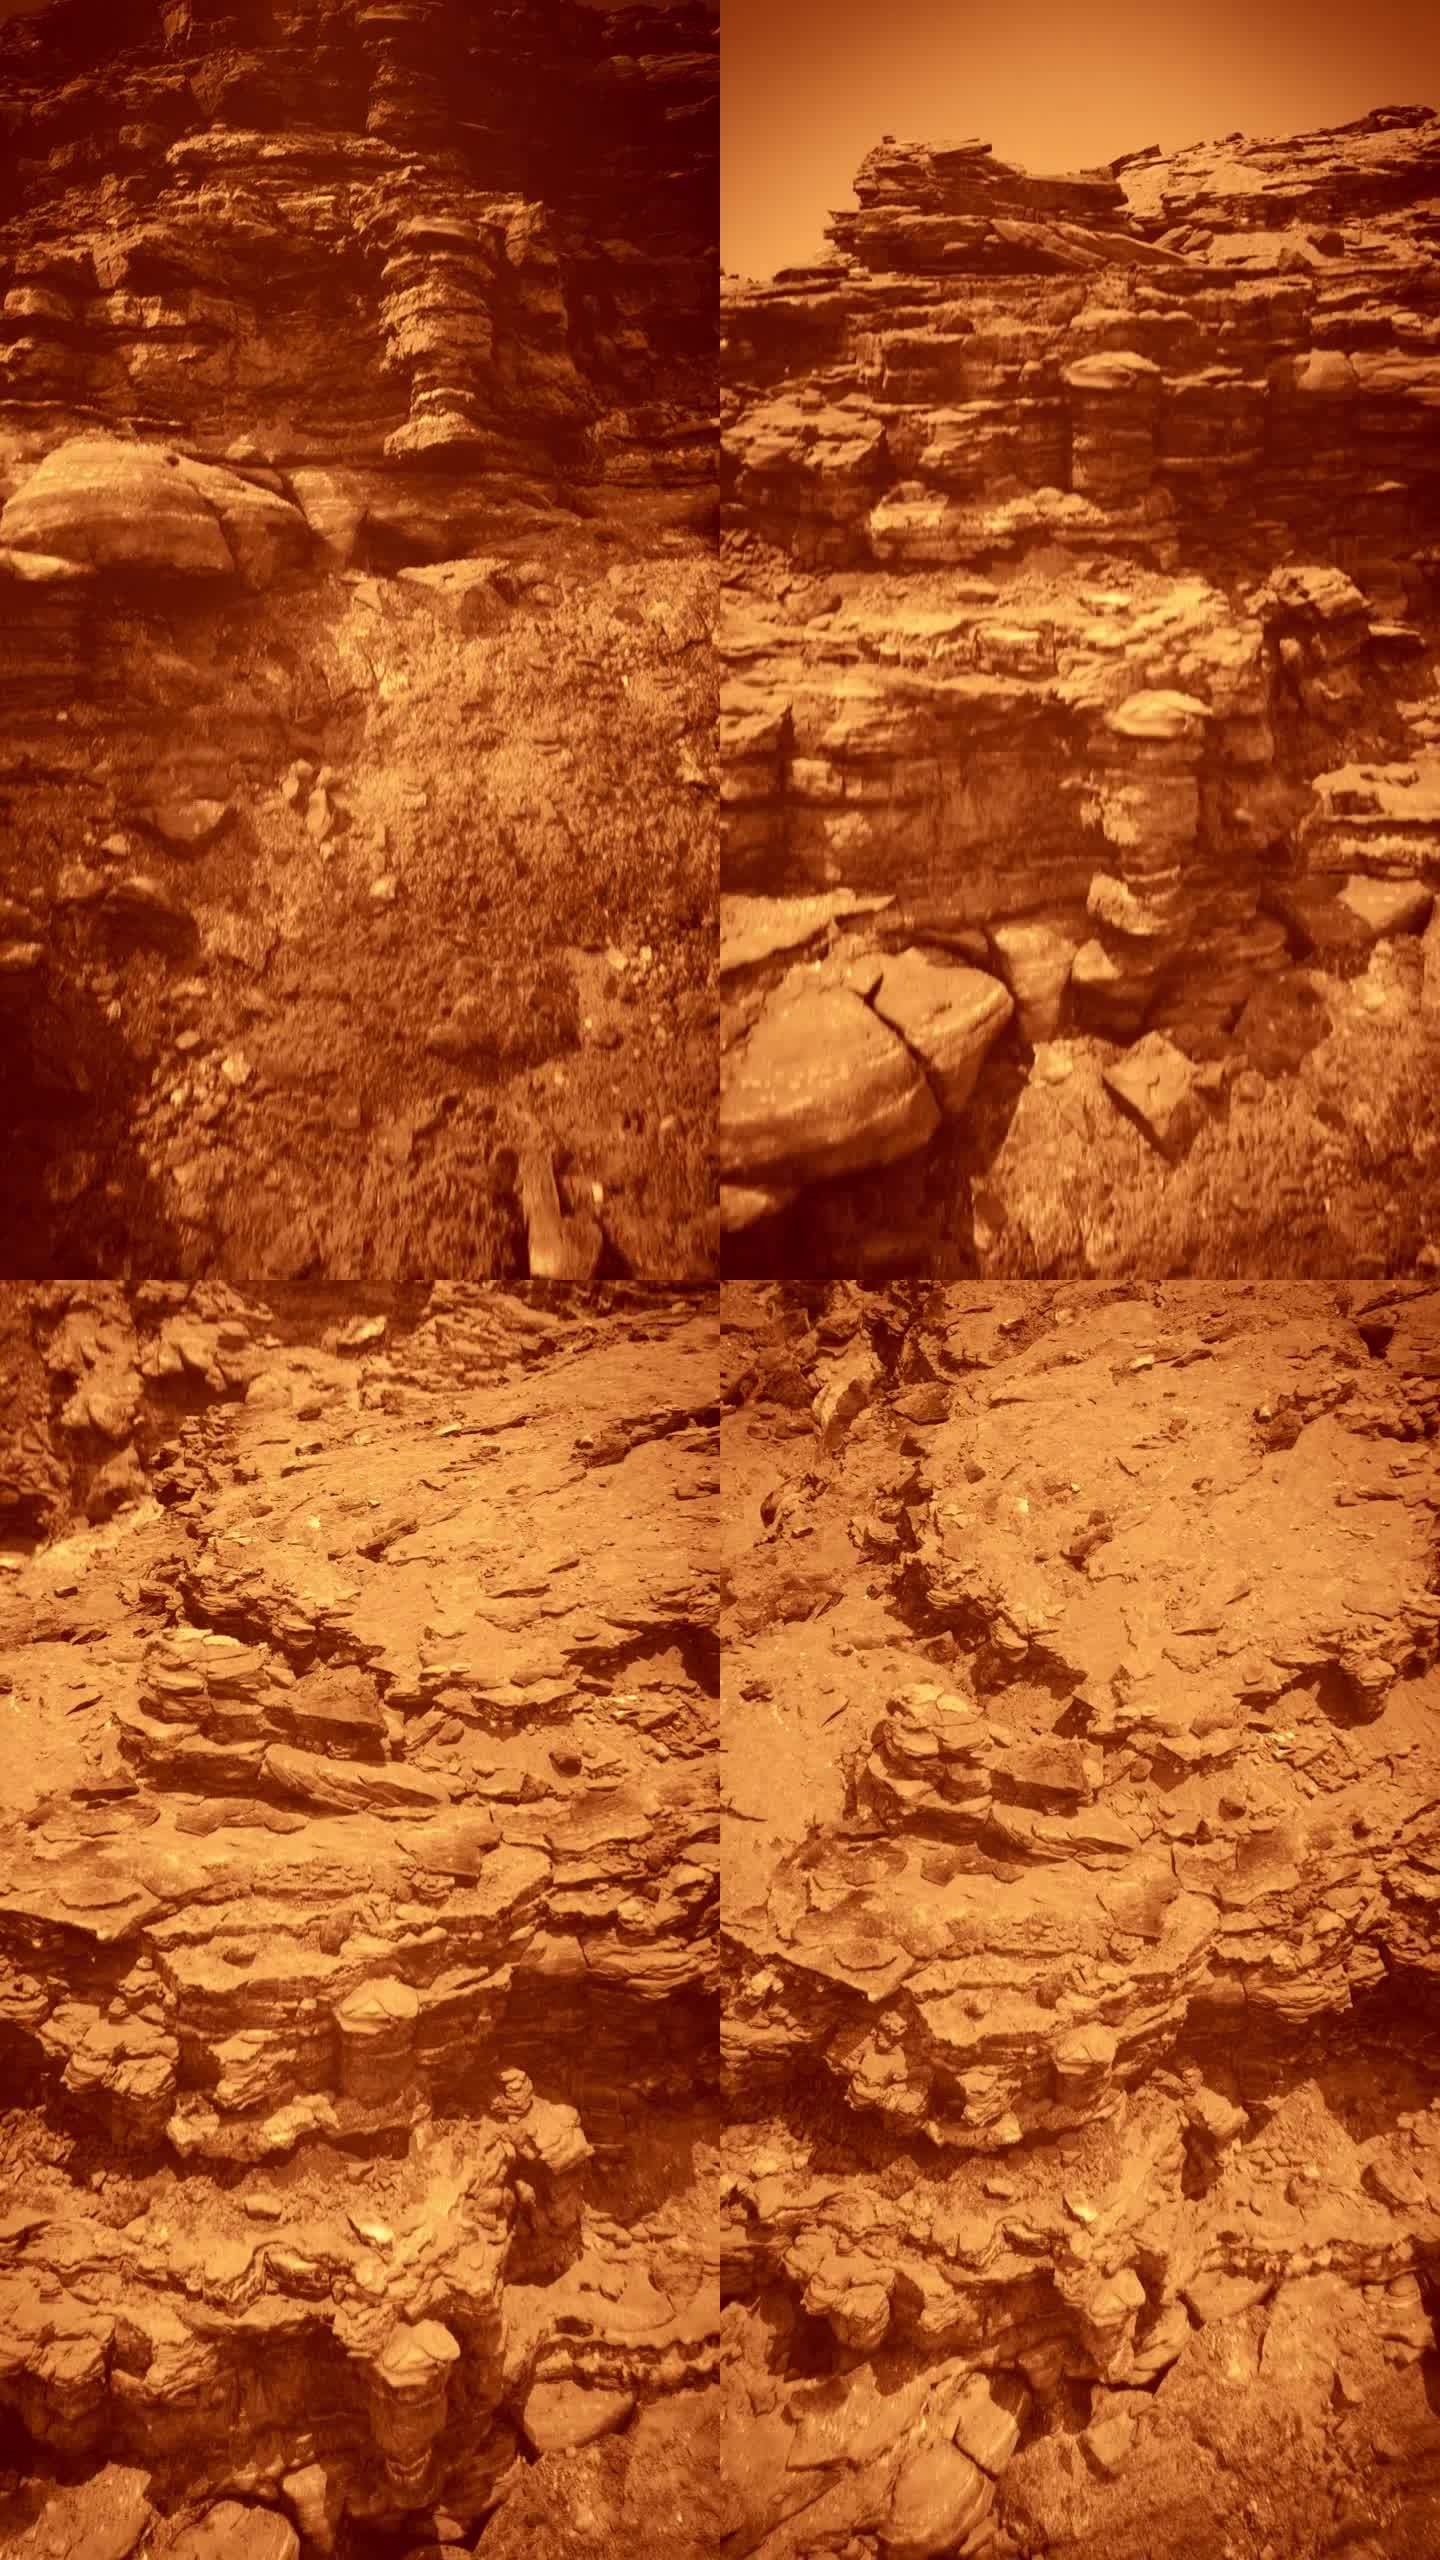 遥远星球火星的岩石表面。空间探索与科学进步垂直视频